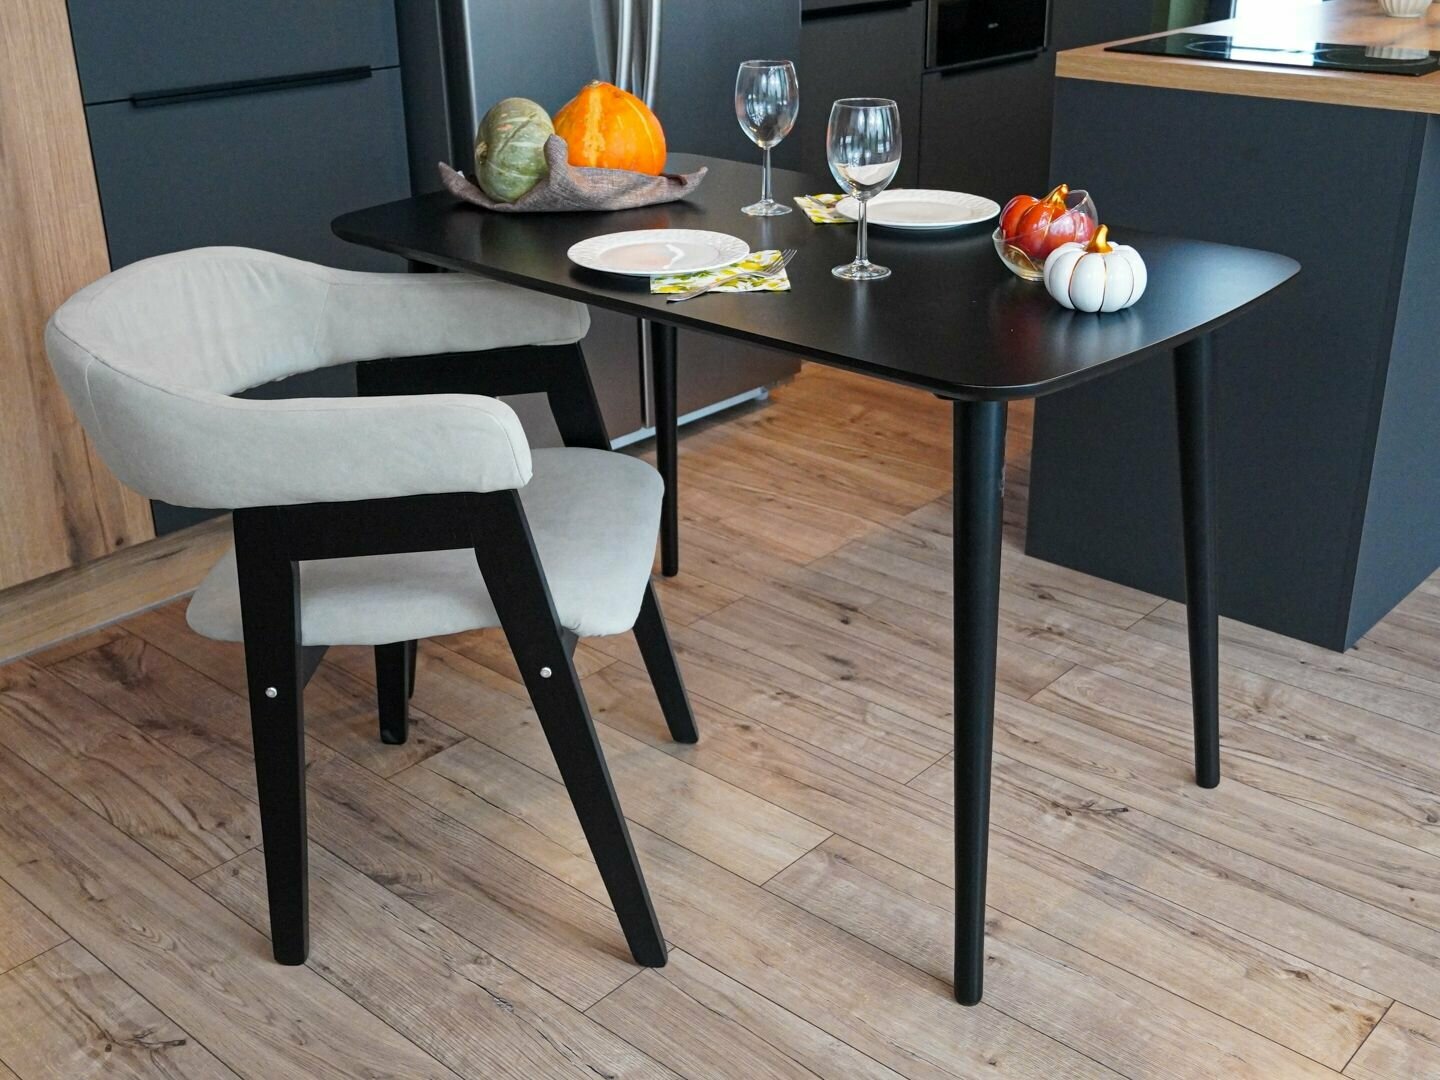 Стол кухонный черный обеденный прямоугольный нераздвижной планер 130см х 75см с черными ножками